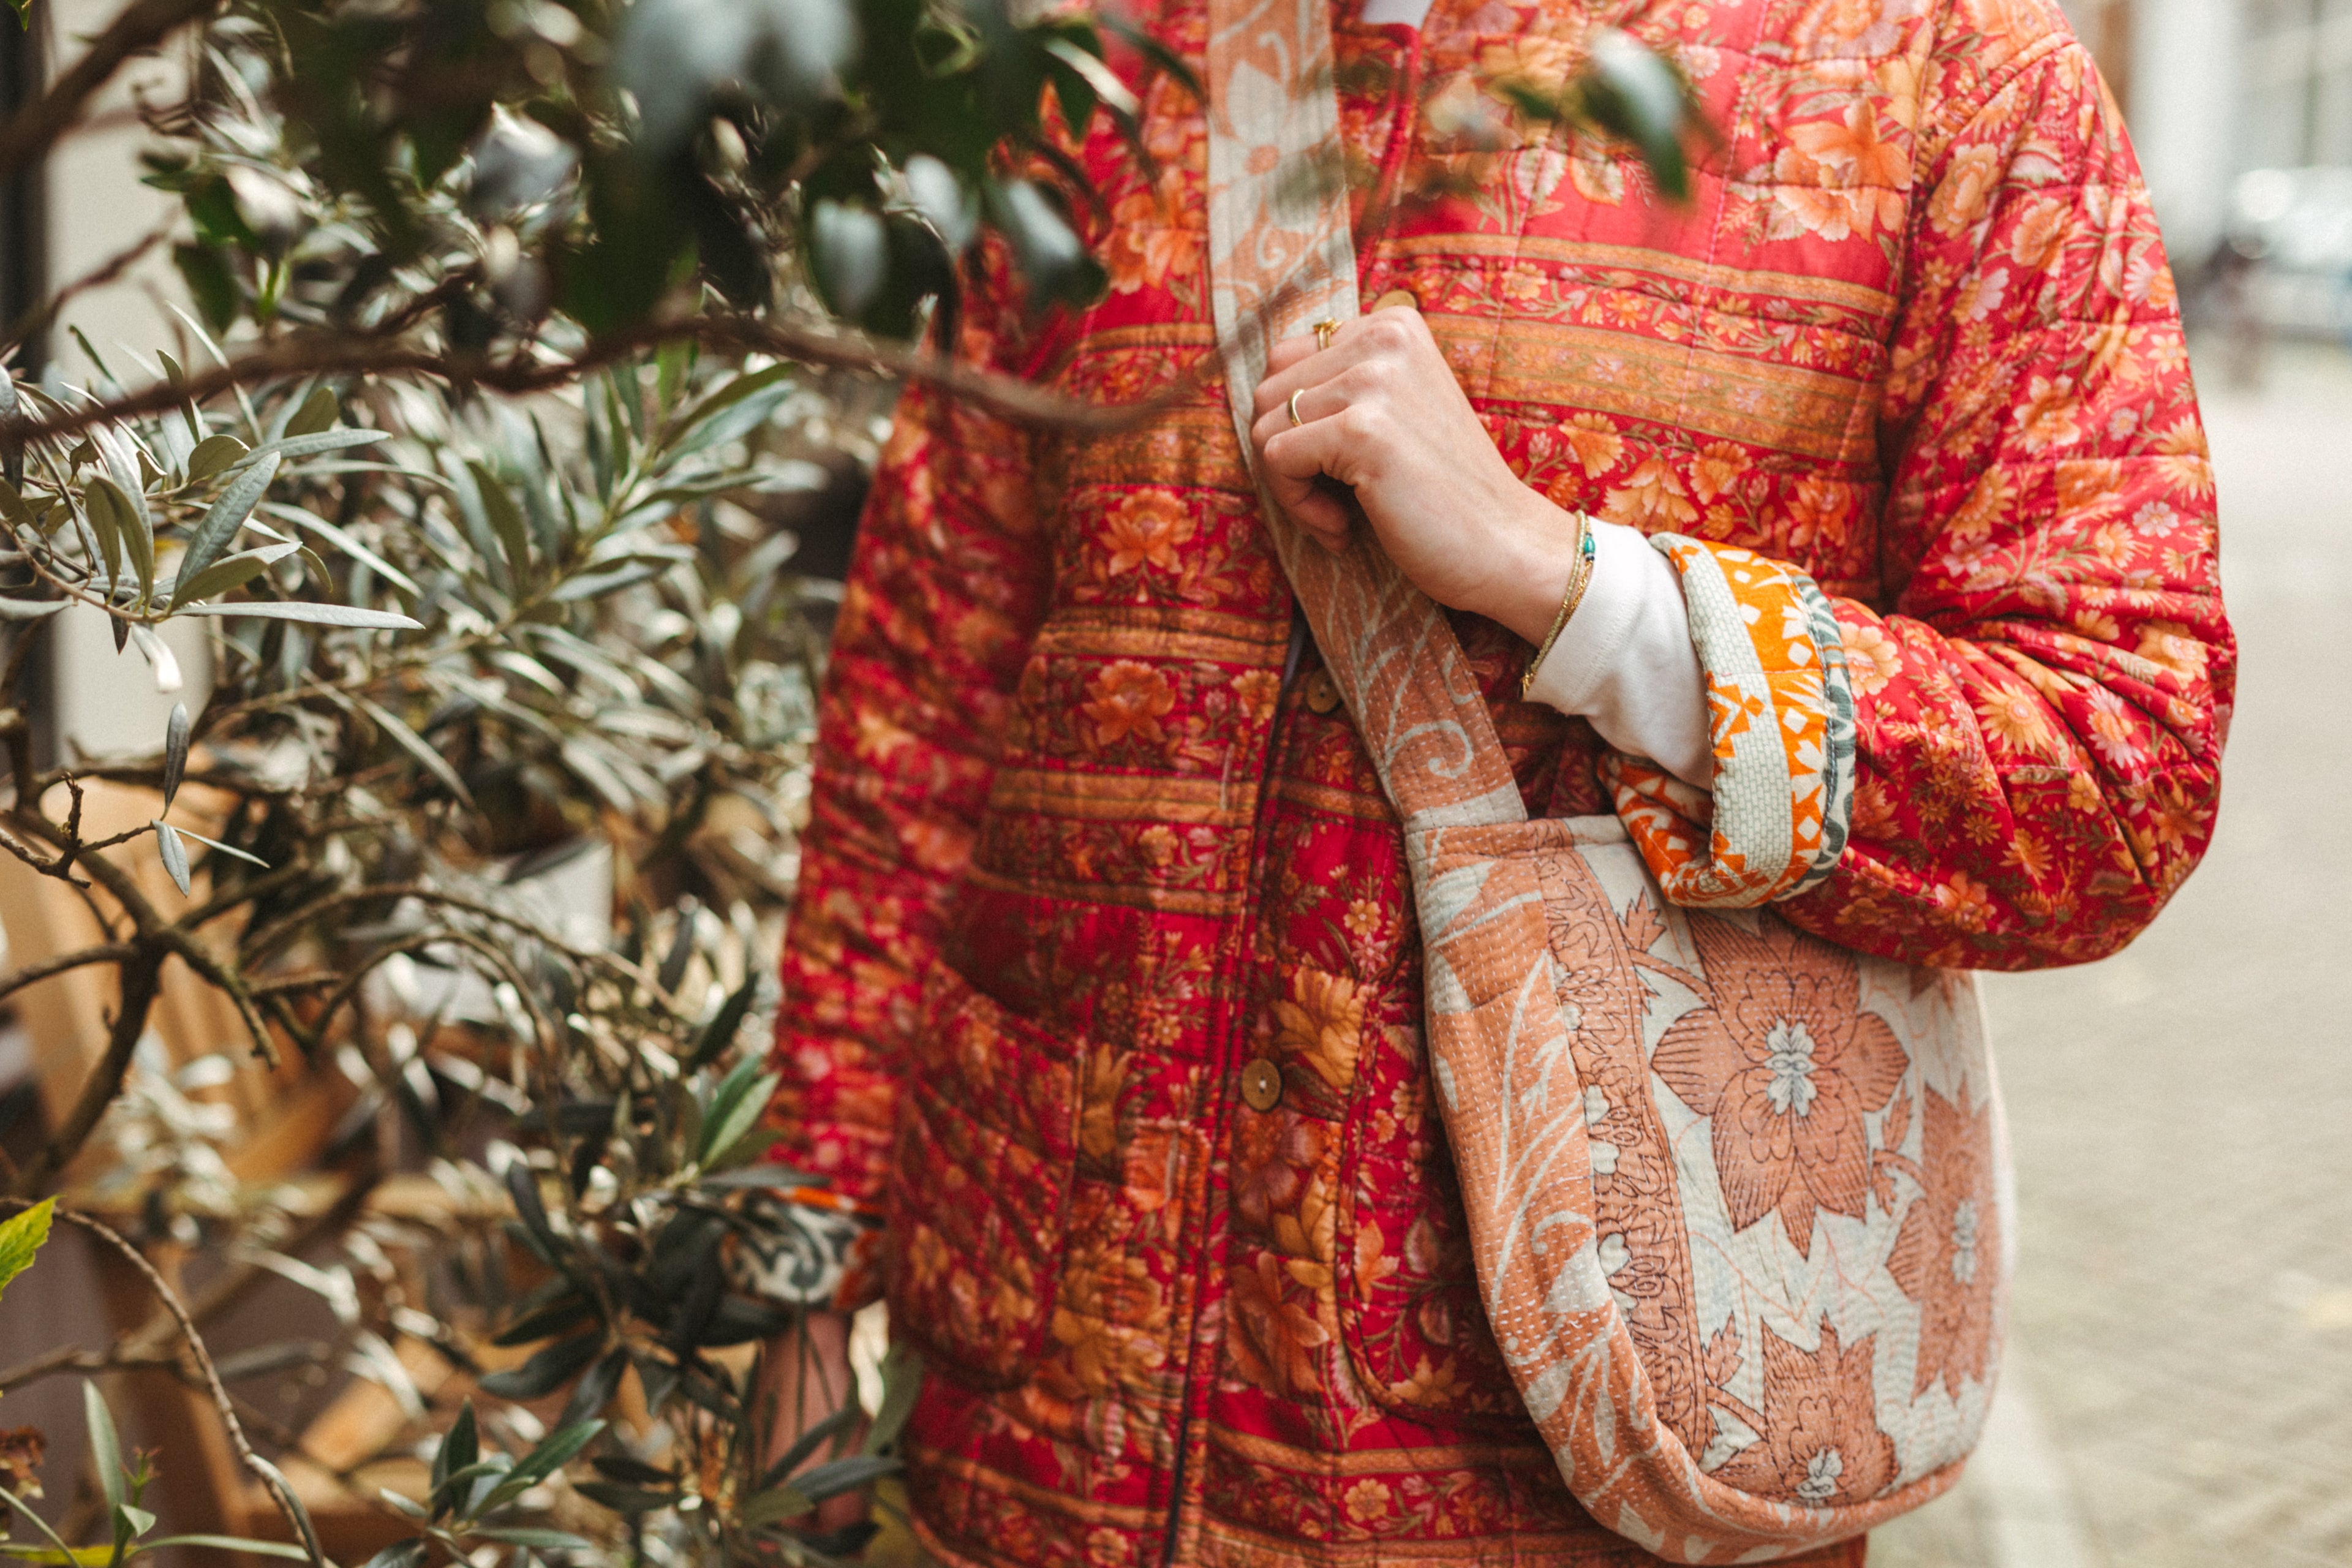 Vivre jewels - de webshop voor unieke, kleurrijke kleding, zoals kimono jasjes of giletjes, en (reversible) vivre tassen met vrolijke prints handgemaakt in India. 